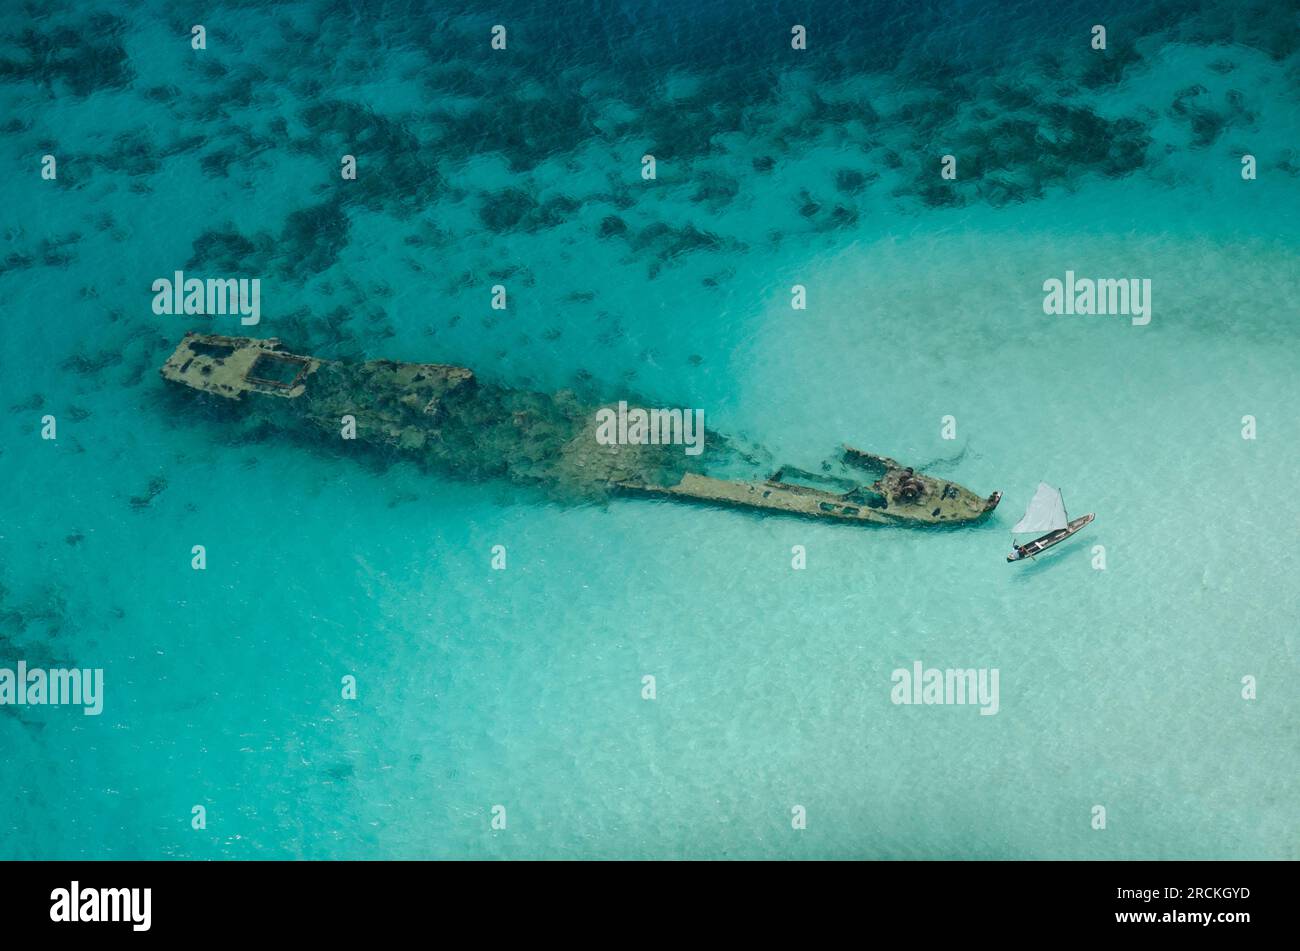 Vue aérienne d'un ancien naufrage dans les îles san blas, Panama, Amérique centrale - photo stock Banque D'Images